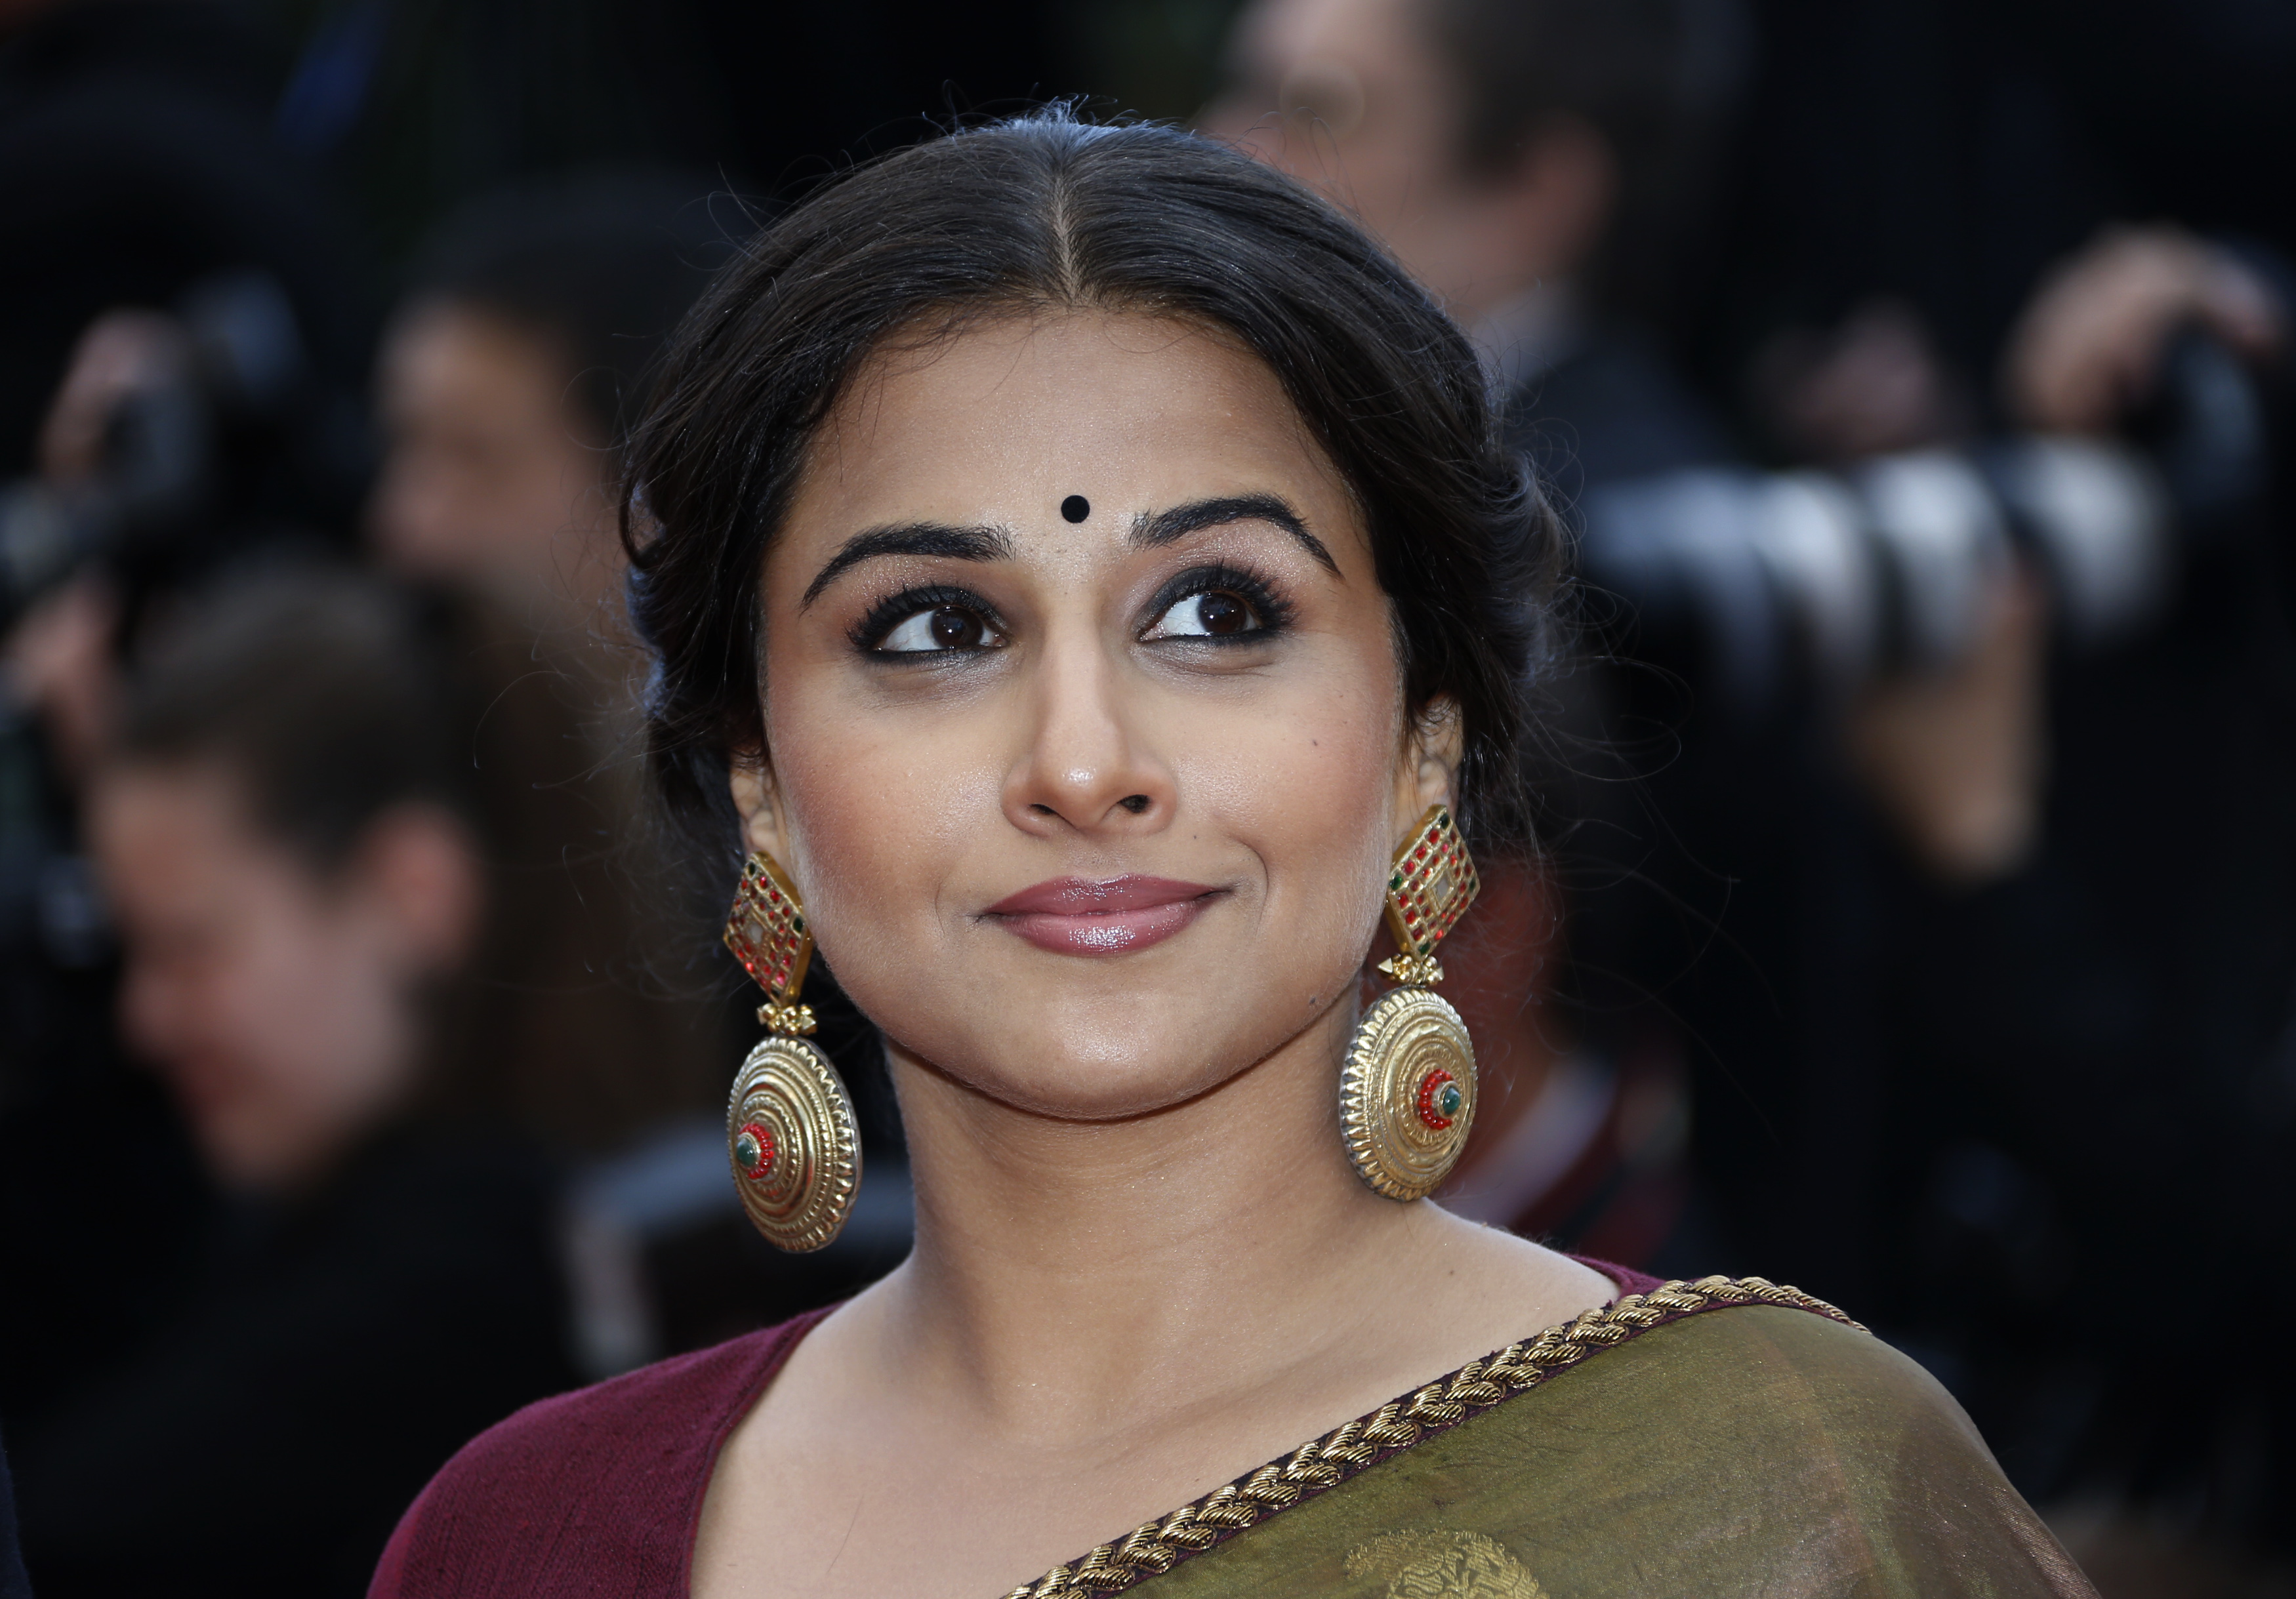 Indian actor Vidya Balan challenges sexism in bureaucracy in her